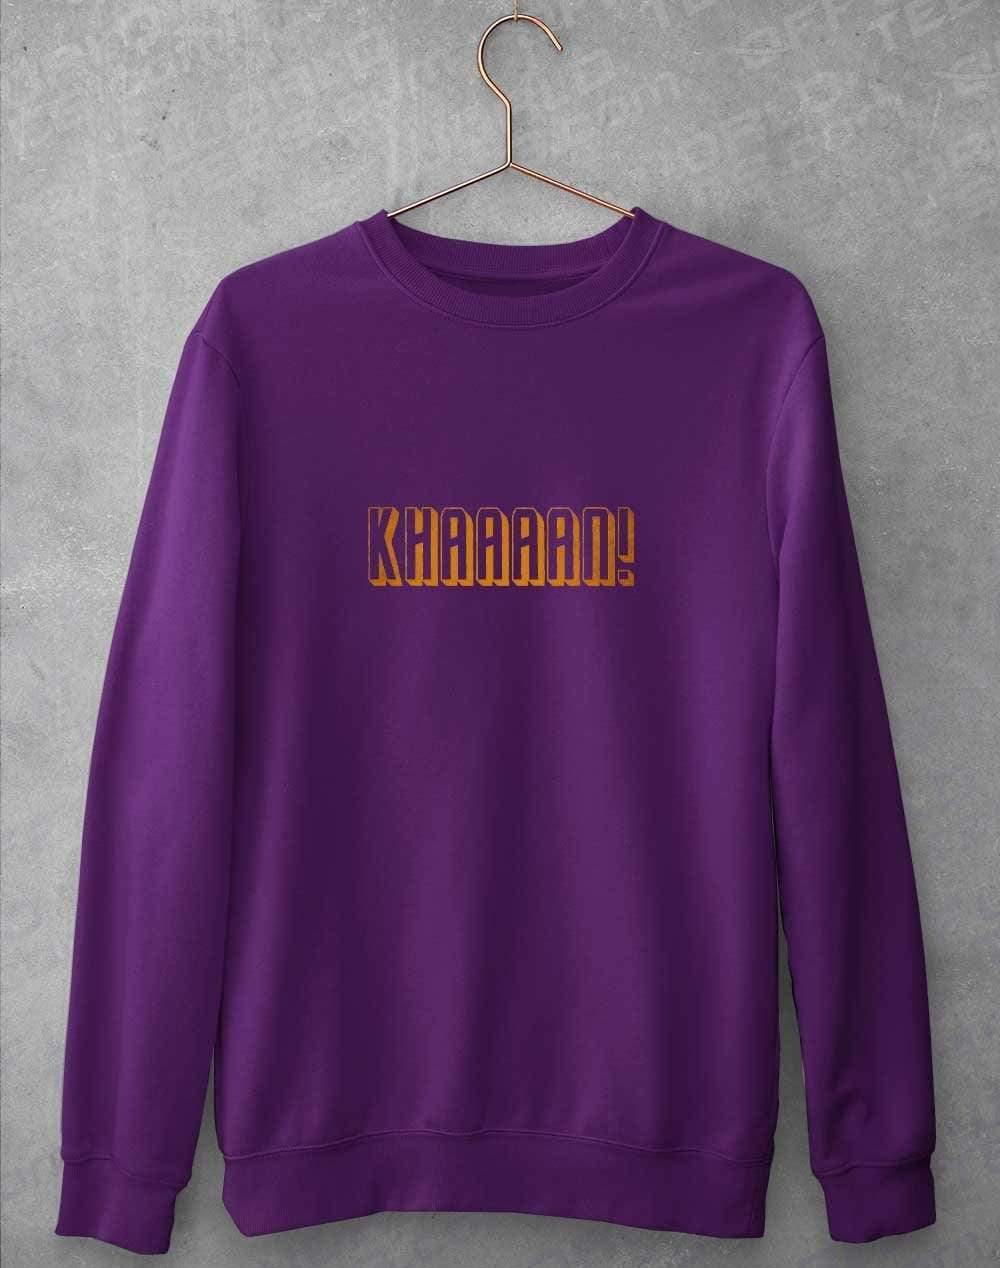 KHAAAAAN Sweatshirt S / Purple  - Off World Tees